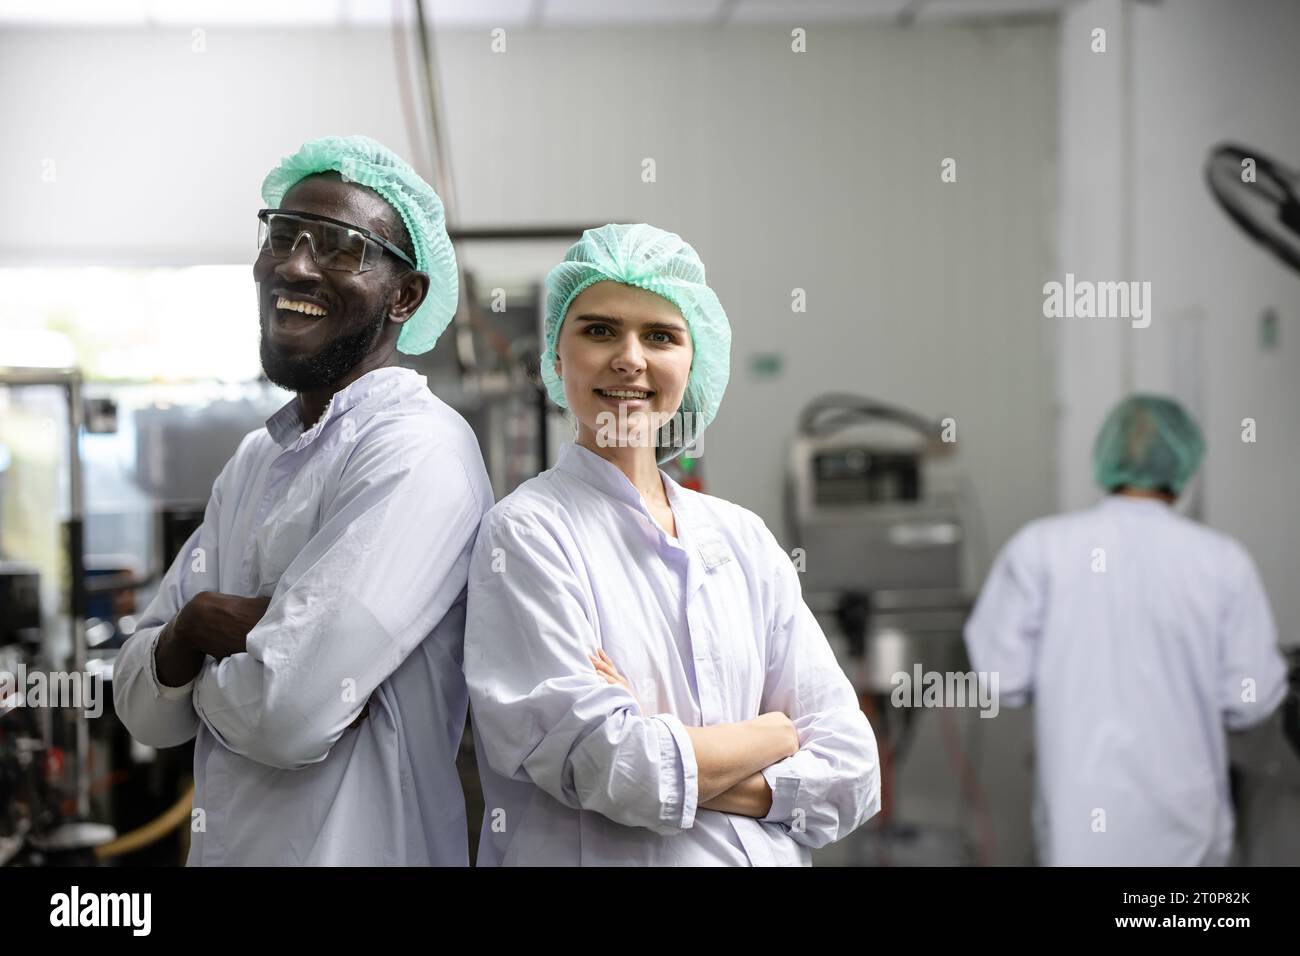 Porträt glücklicher schwarzer Arbeiter lachen lächelnd zusammen mit einer Freundin, die den Arm überkreuzt hat und in der Lebensmittel- und Getränkefabrik mit Hygiene arbeitet Stockfoto